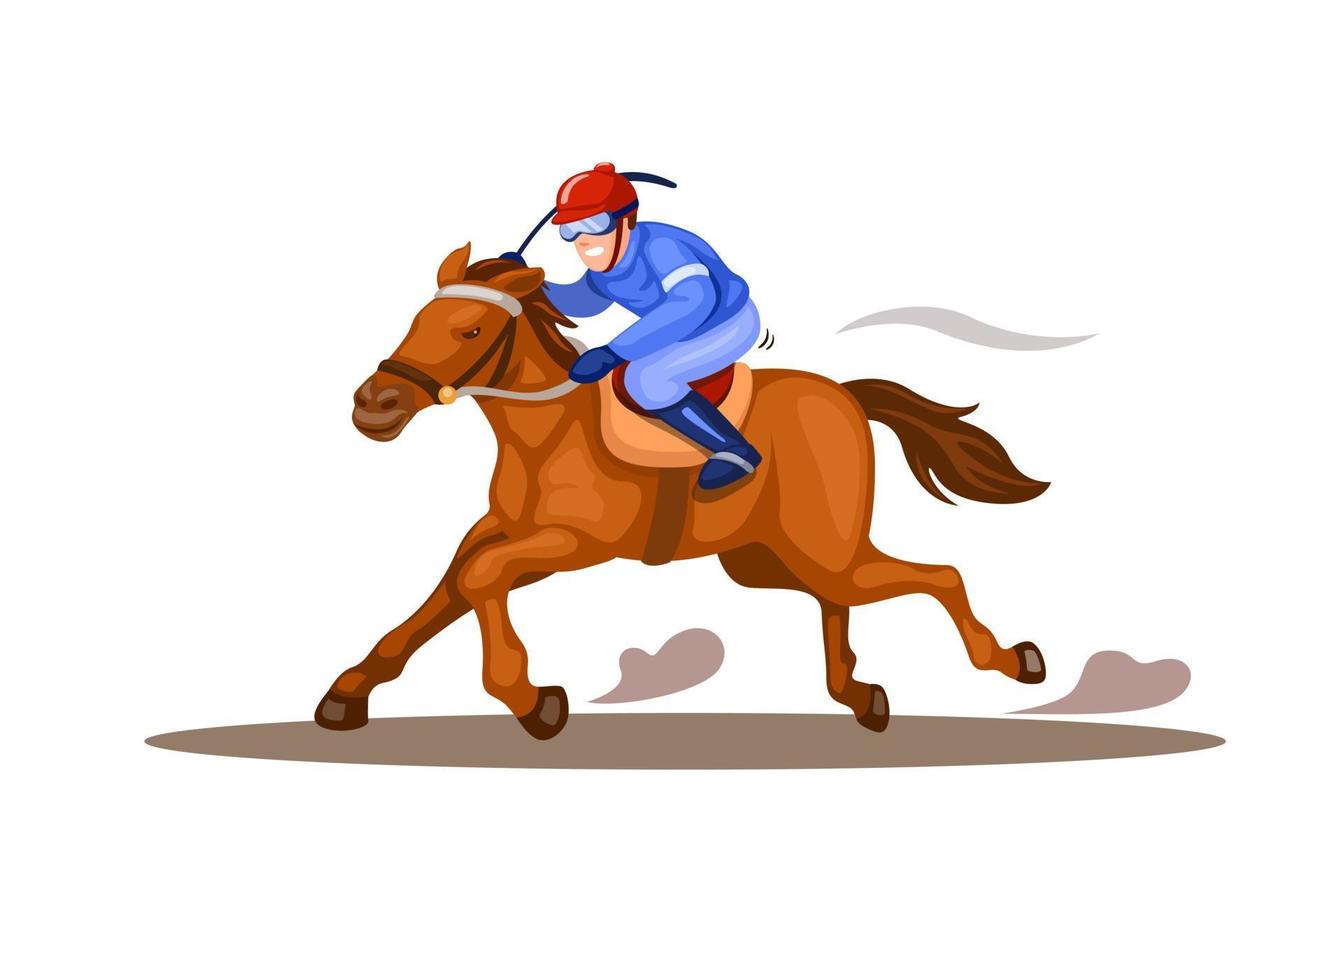 fantino cavallo in corsa di cavalli concorrenza sport illustrazione vettore